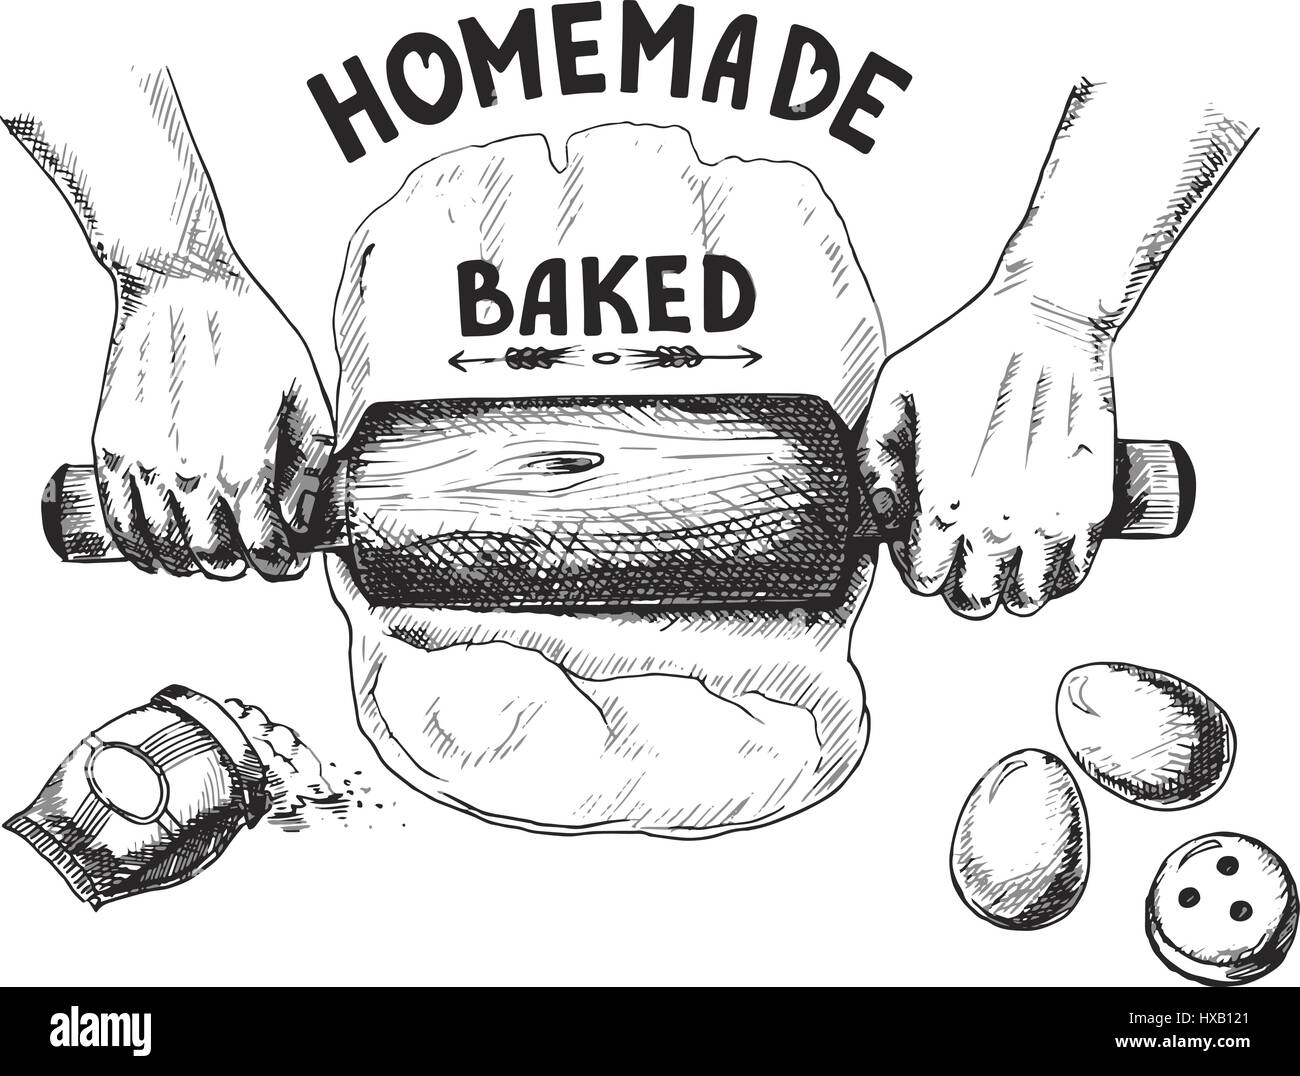 Illustrazione vettoriale di un disegno sul tema di torte fatte in casa. Le mani la laminazione della pasta. Fatto a mano in bianco e nero. Isolato su sfondo bianco Illustrazione Vettoriale